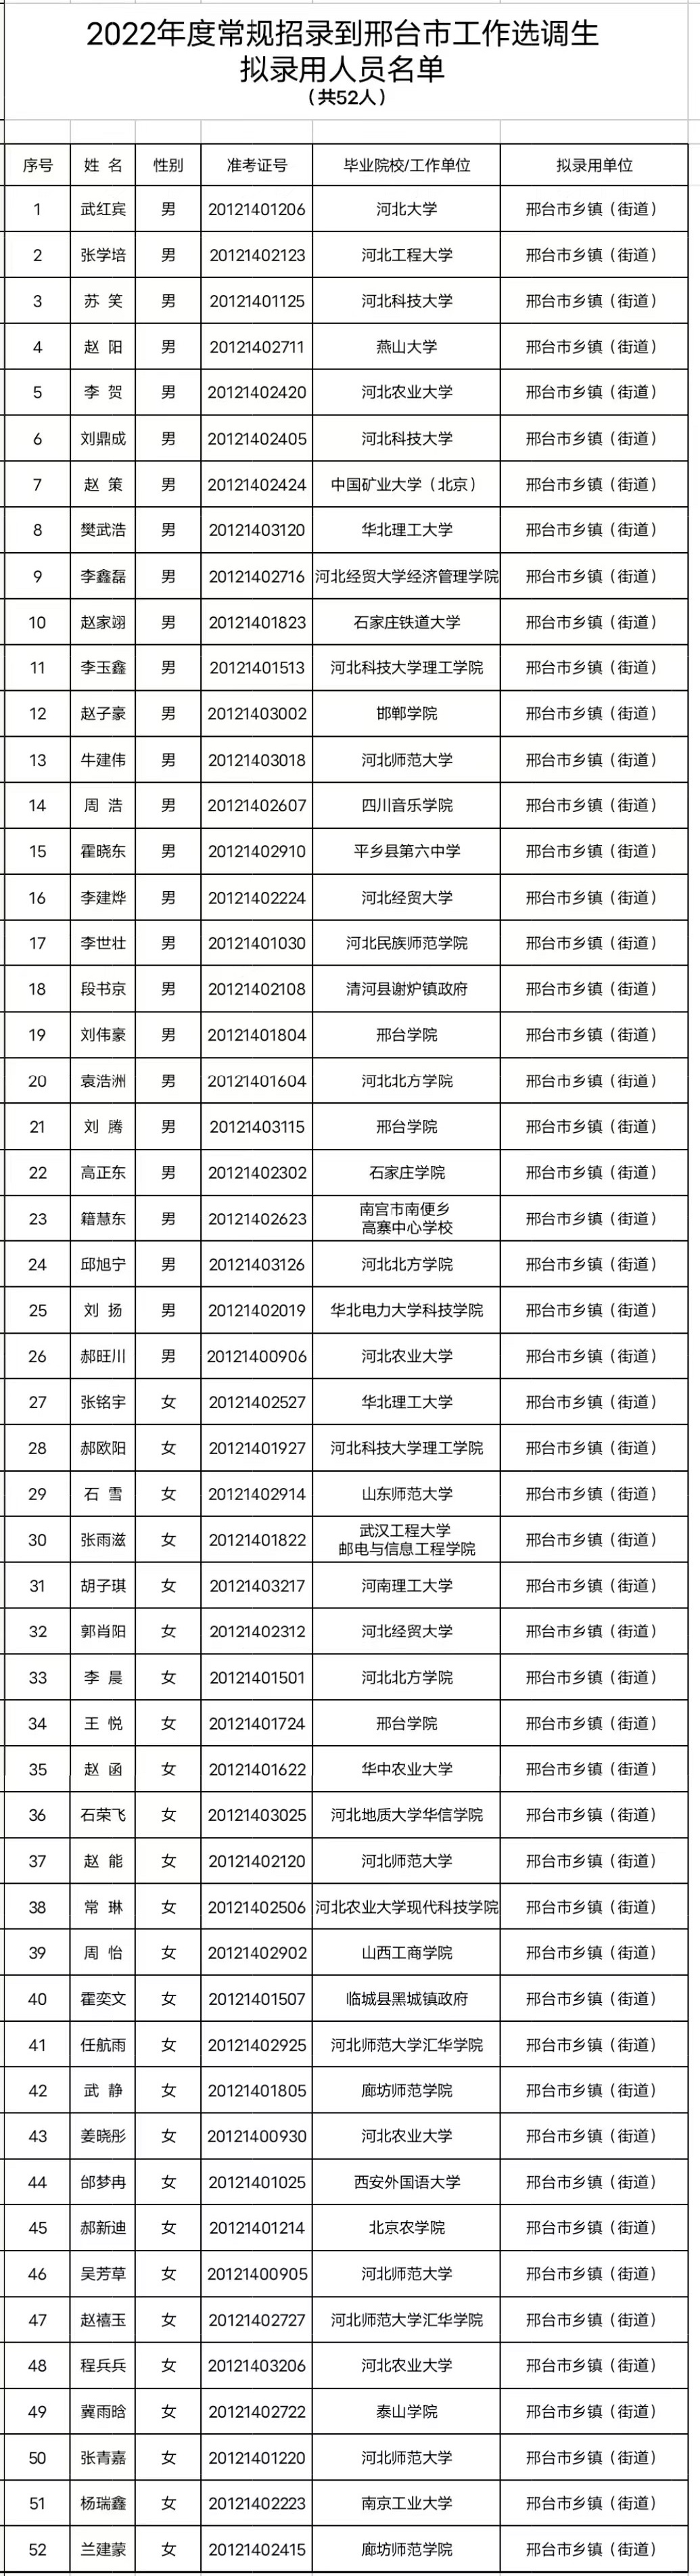 中共邢台市委组织部关于2022年度常规招录到邢台市工作选调生拟录用人员的公示